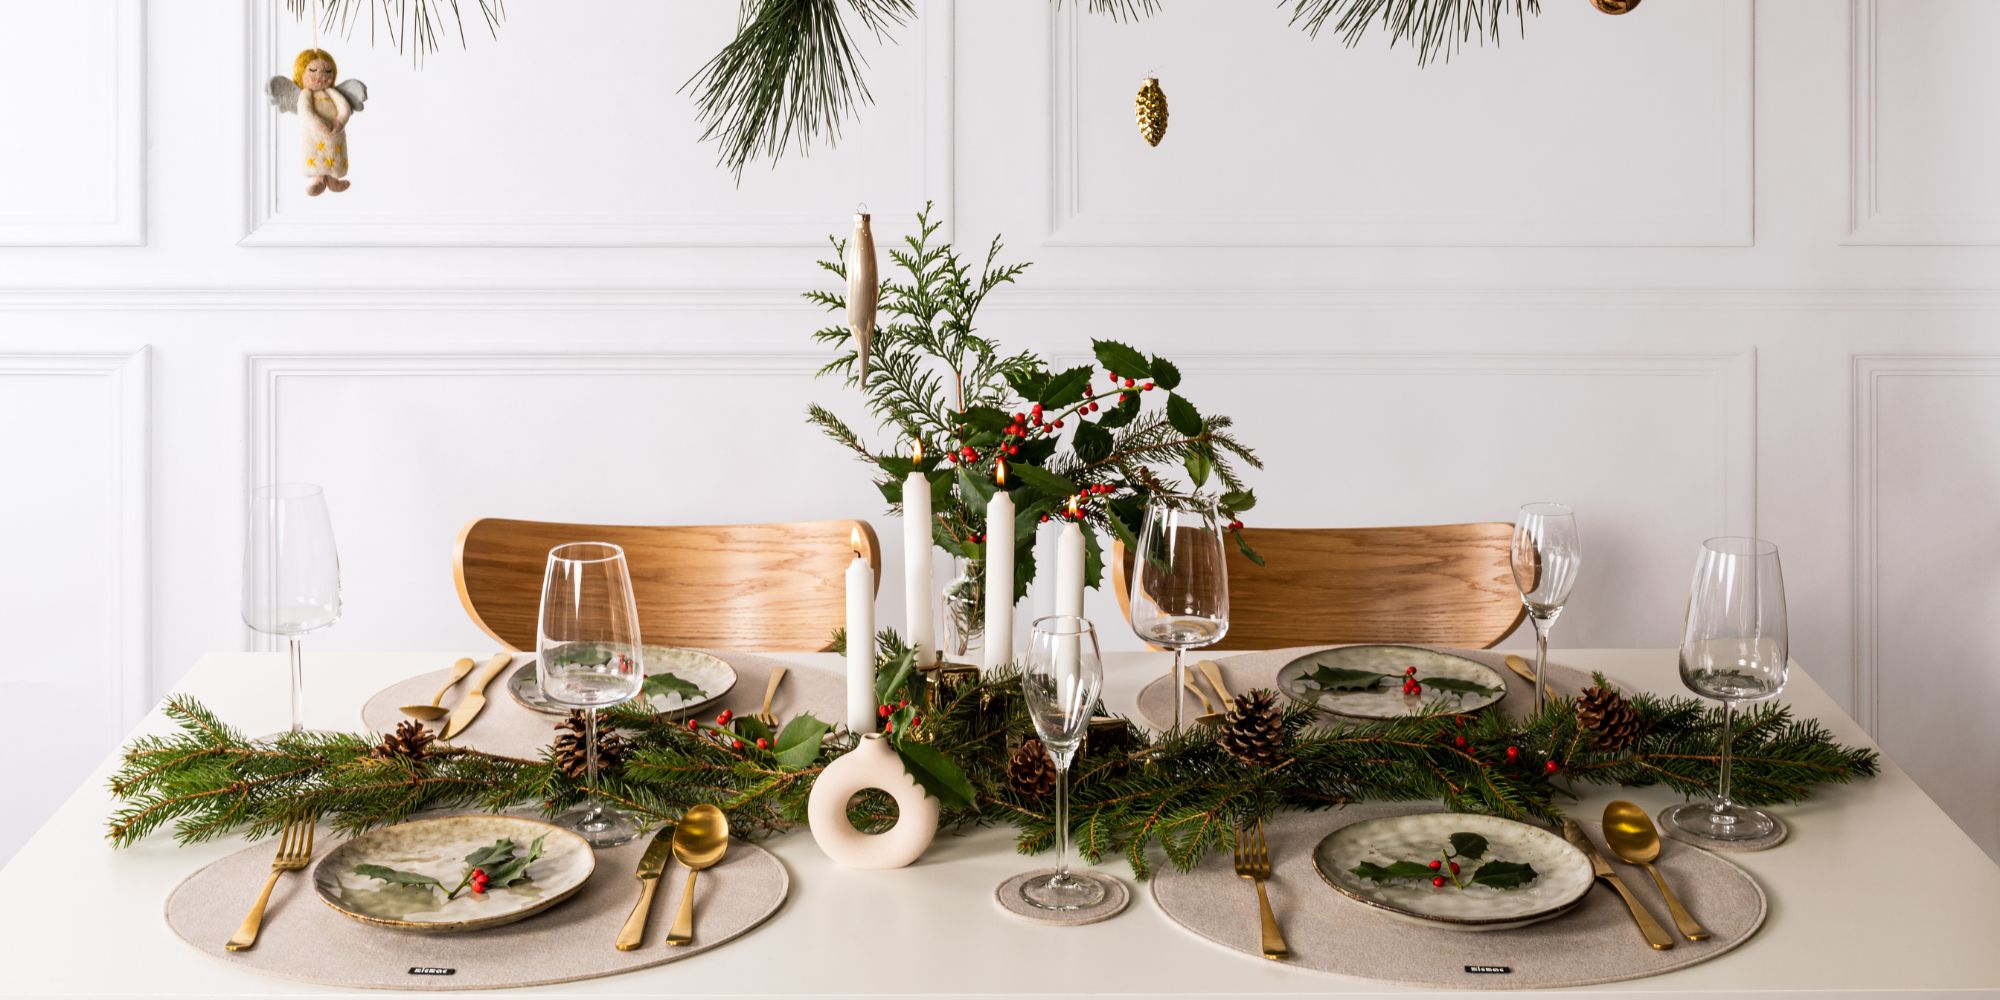 Entrez l’esprit de Noël dans vos maisons avec nos dessous de table festifs.